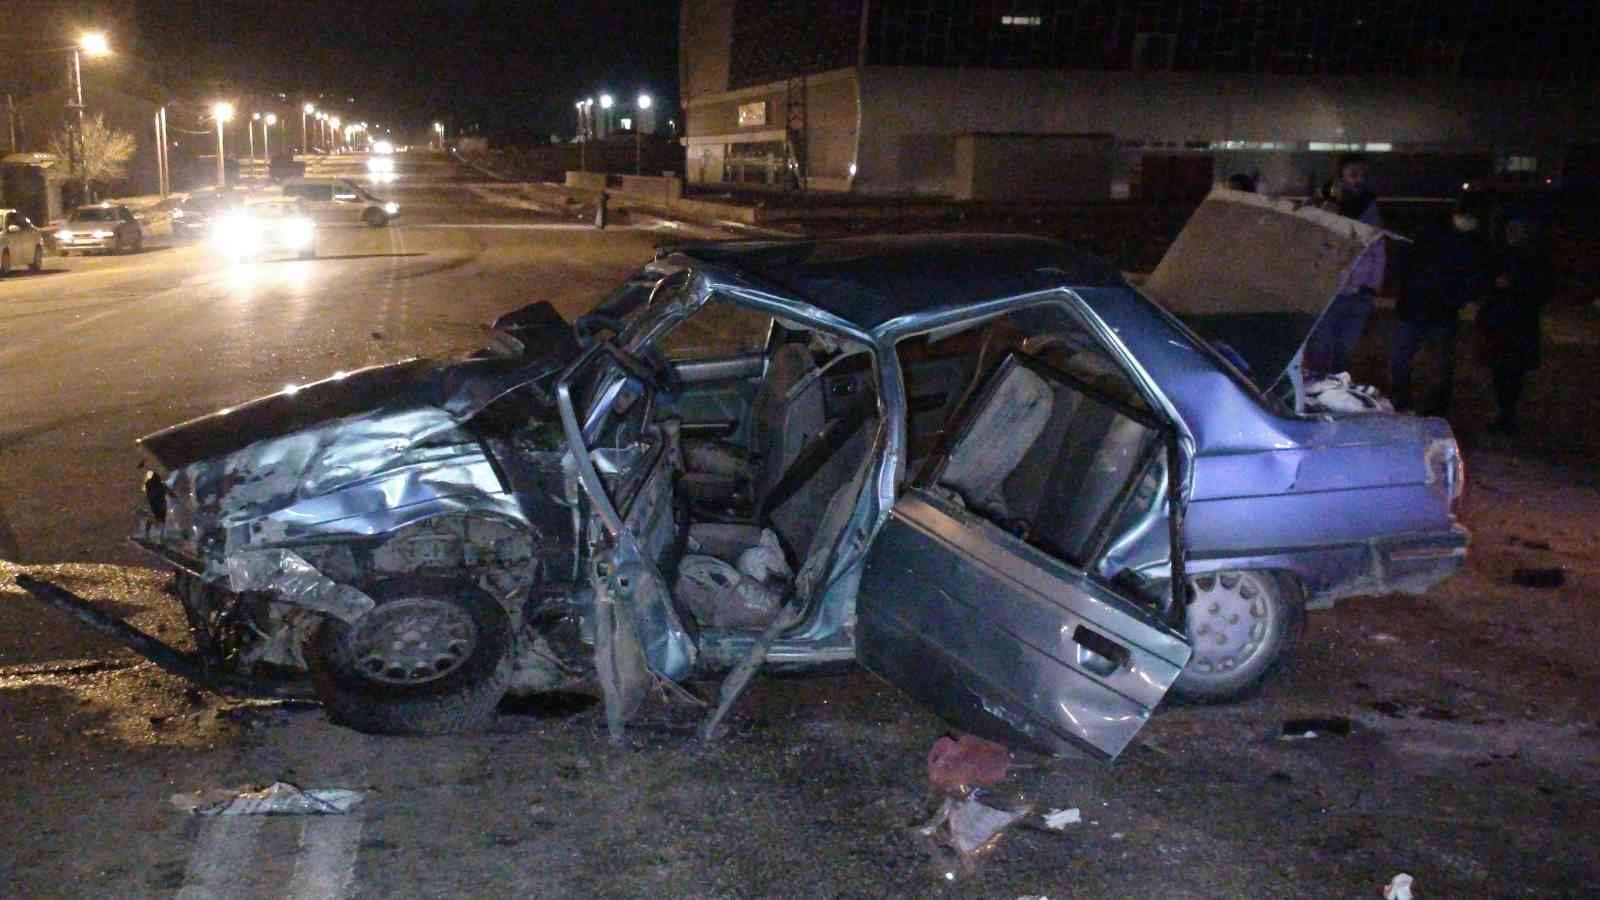 Karaman’da hafif ticari araç ile otomobil çarpıştı: 9 yaralı #karaman